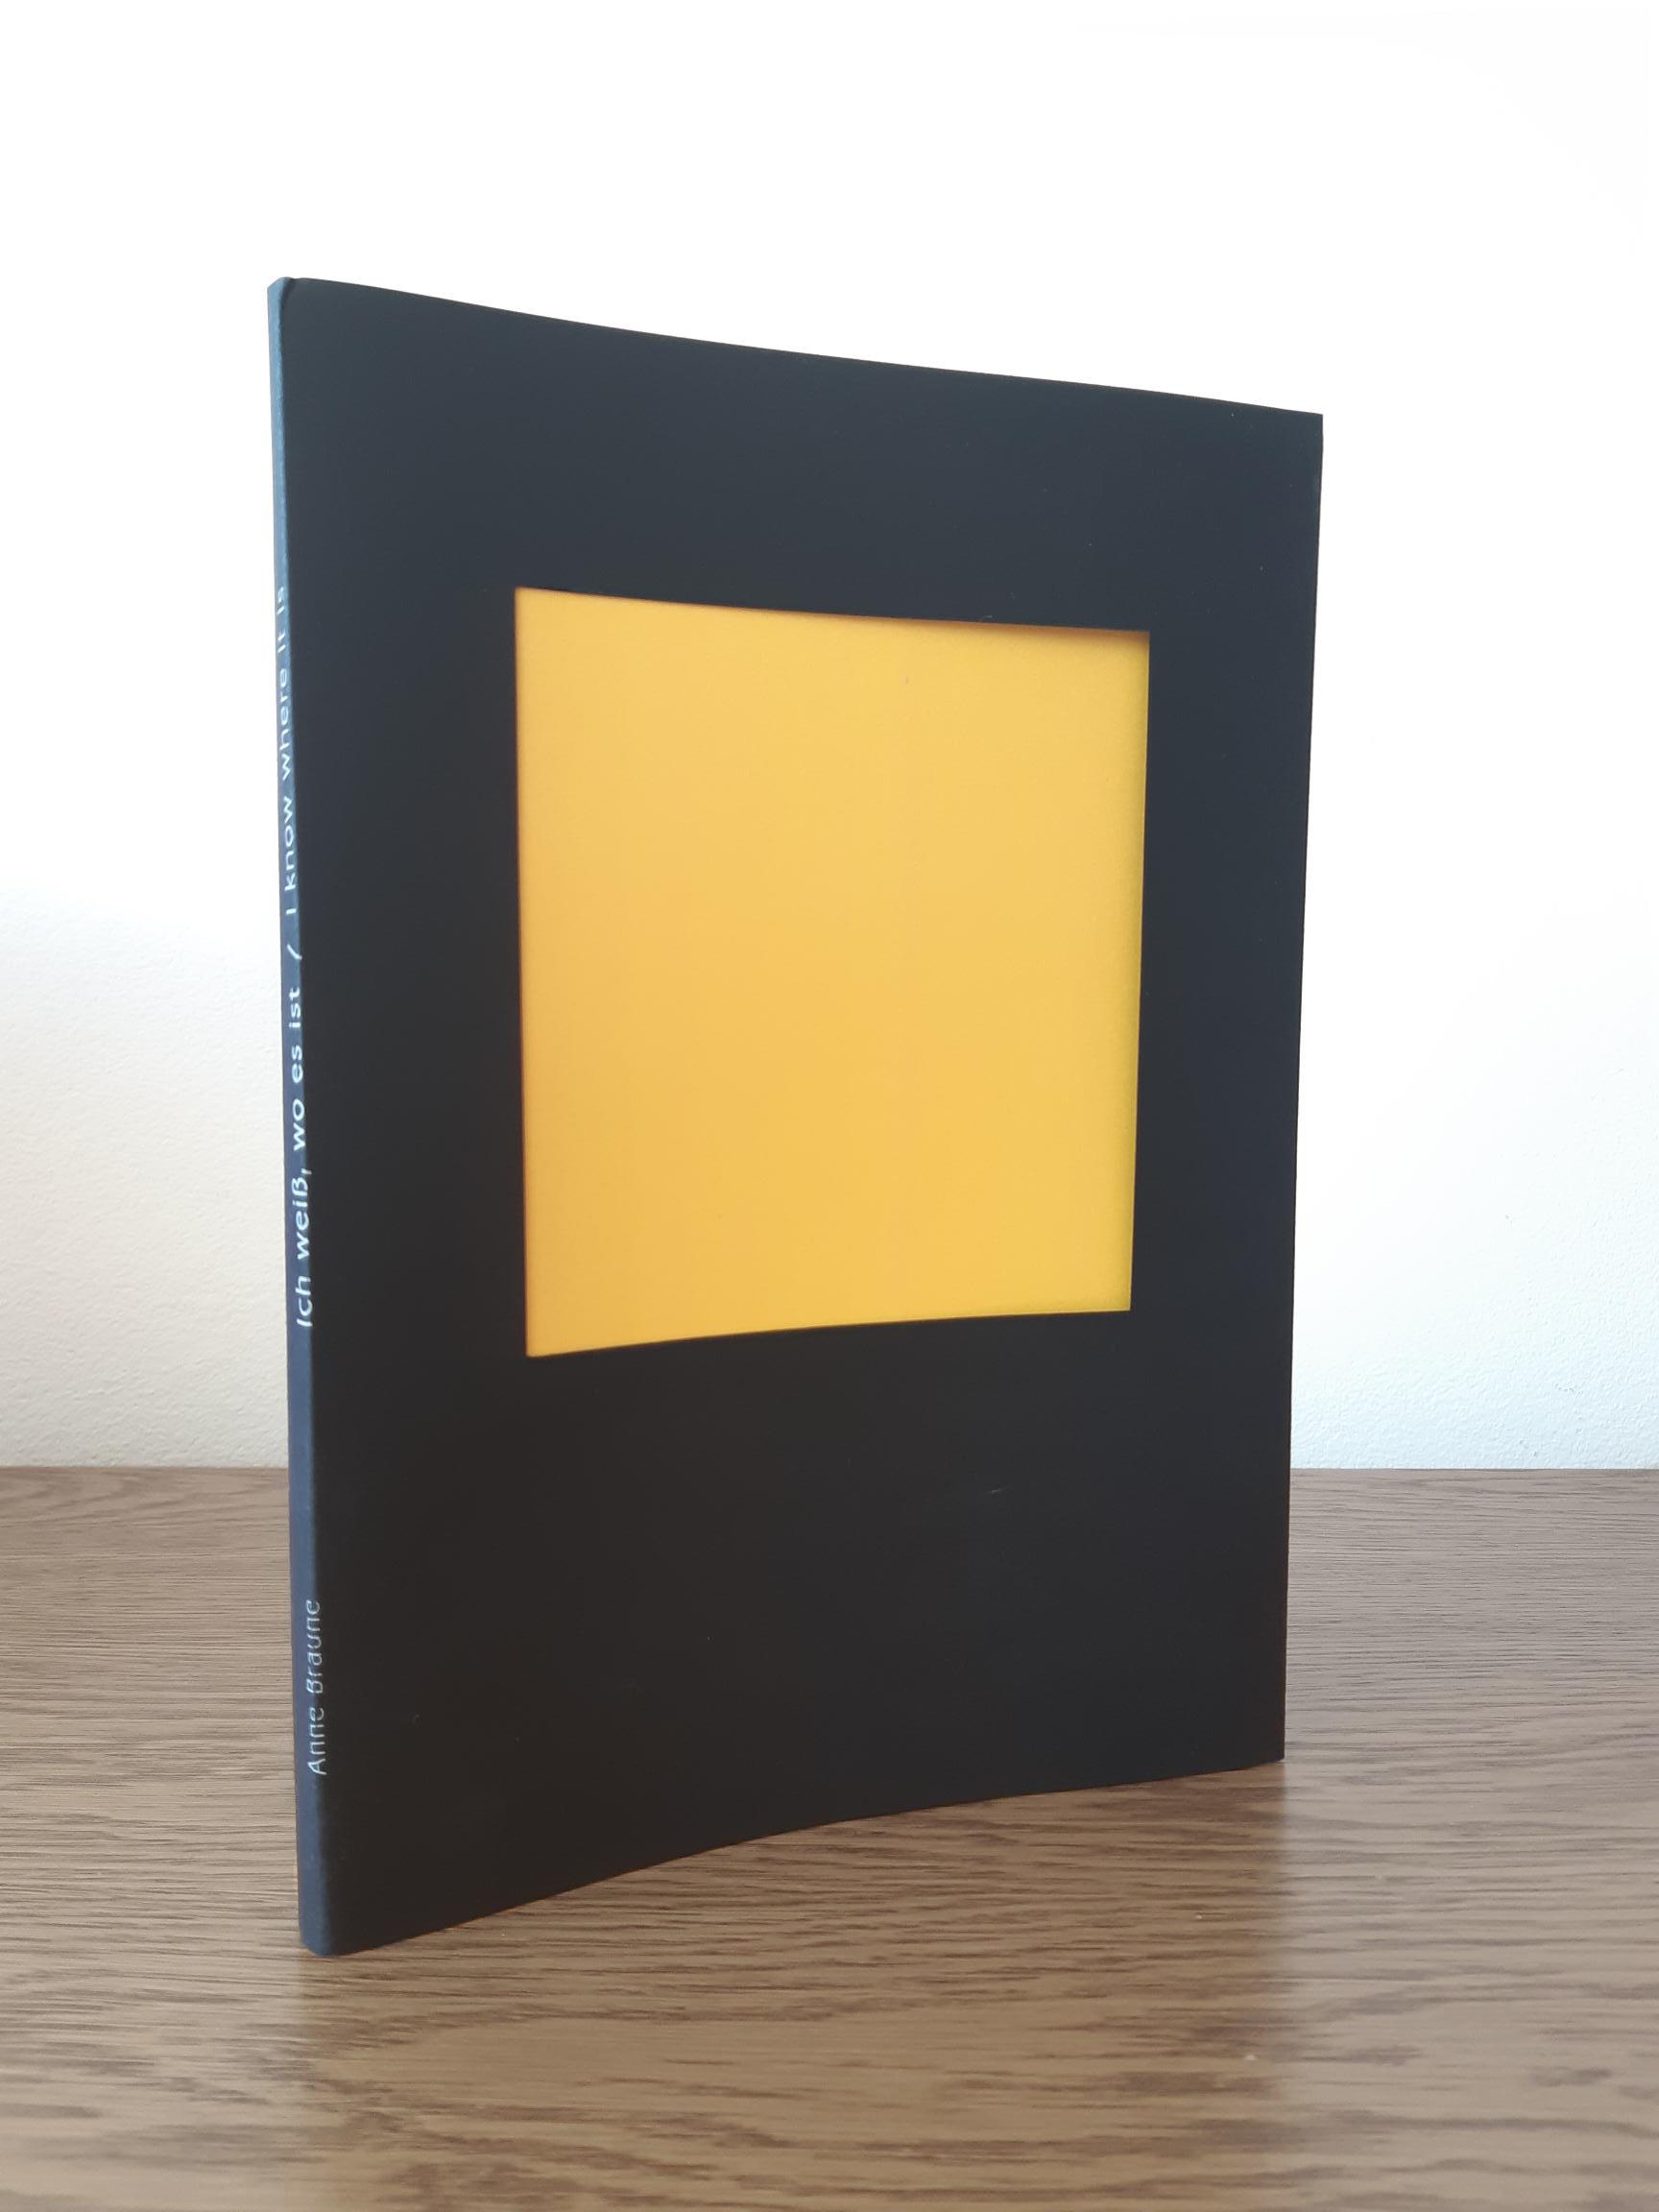 Das Foto zeigt das Buch zur Arbeit "Ich weiß, wie es ist". Das Buch hat einen schwarzen Umschlag. Der Titel steht in weiß auf dem Buchrücken. Vorne ist im Umschlag ein Ausschnitt. Dahinter ist eine gelbe Farbfläche zu sehen.